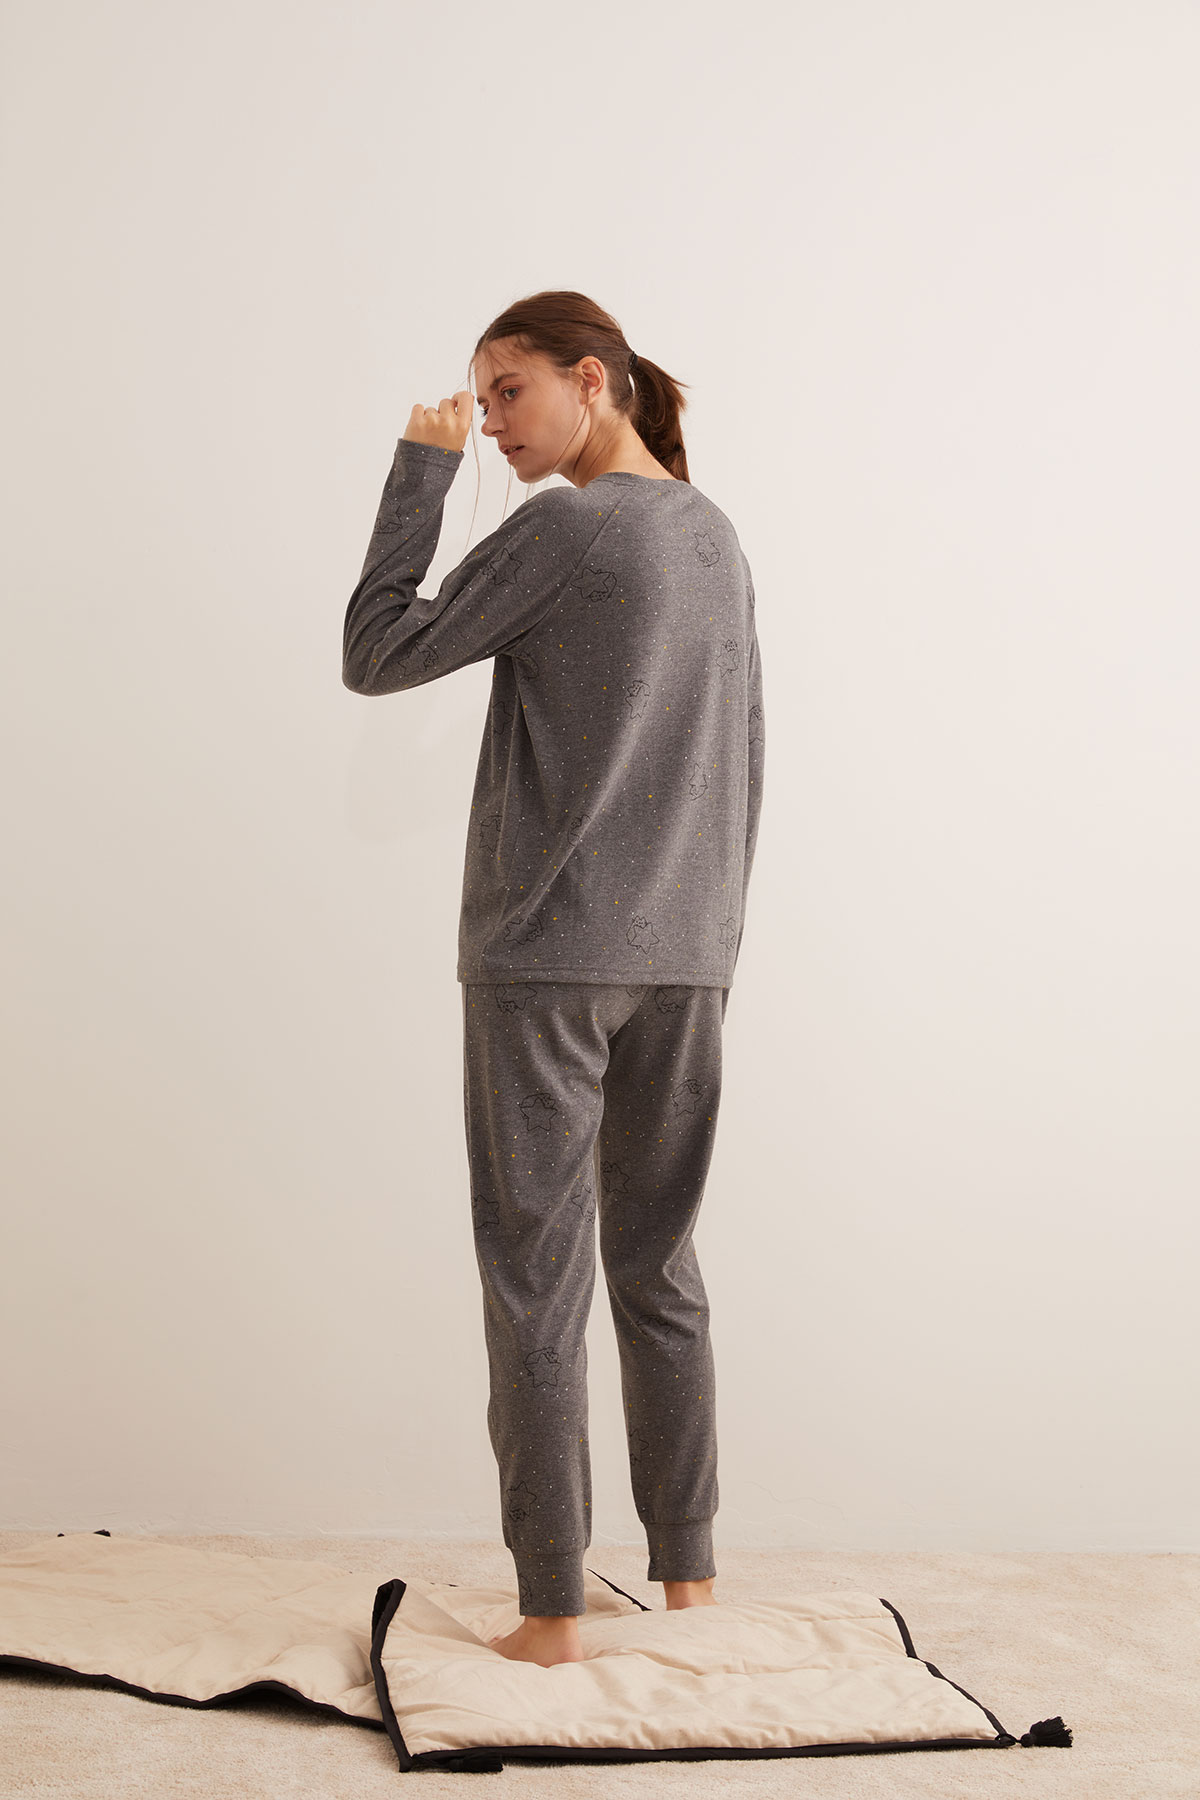 Kadın Belde Kontrast Süs Biye Detaylı Manşetli Pijama Altı